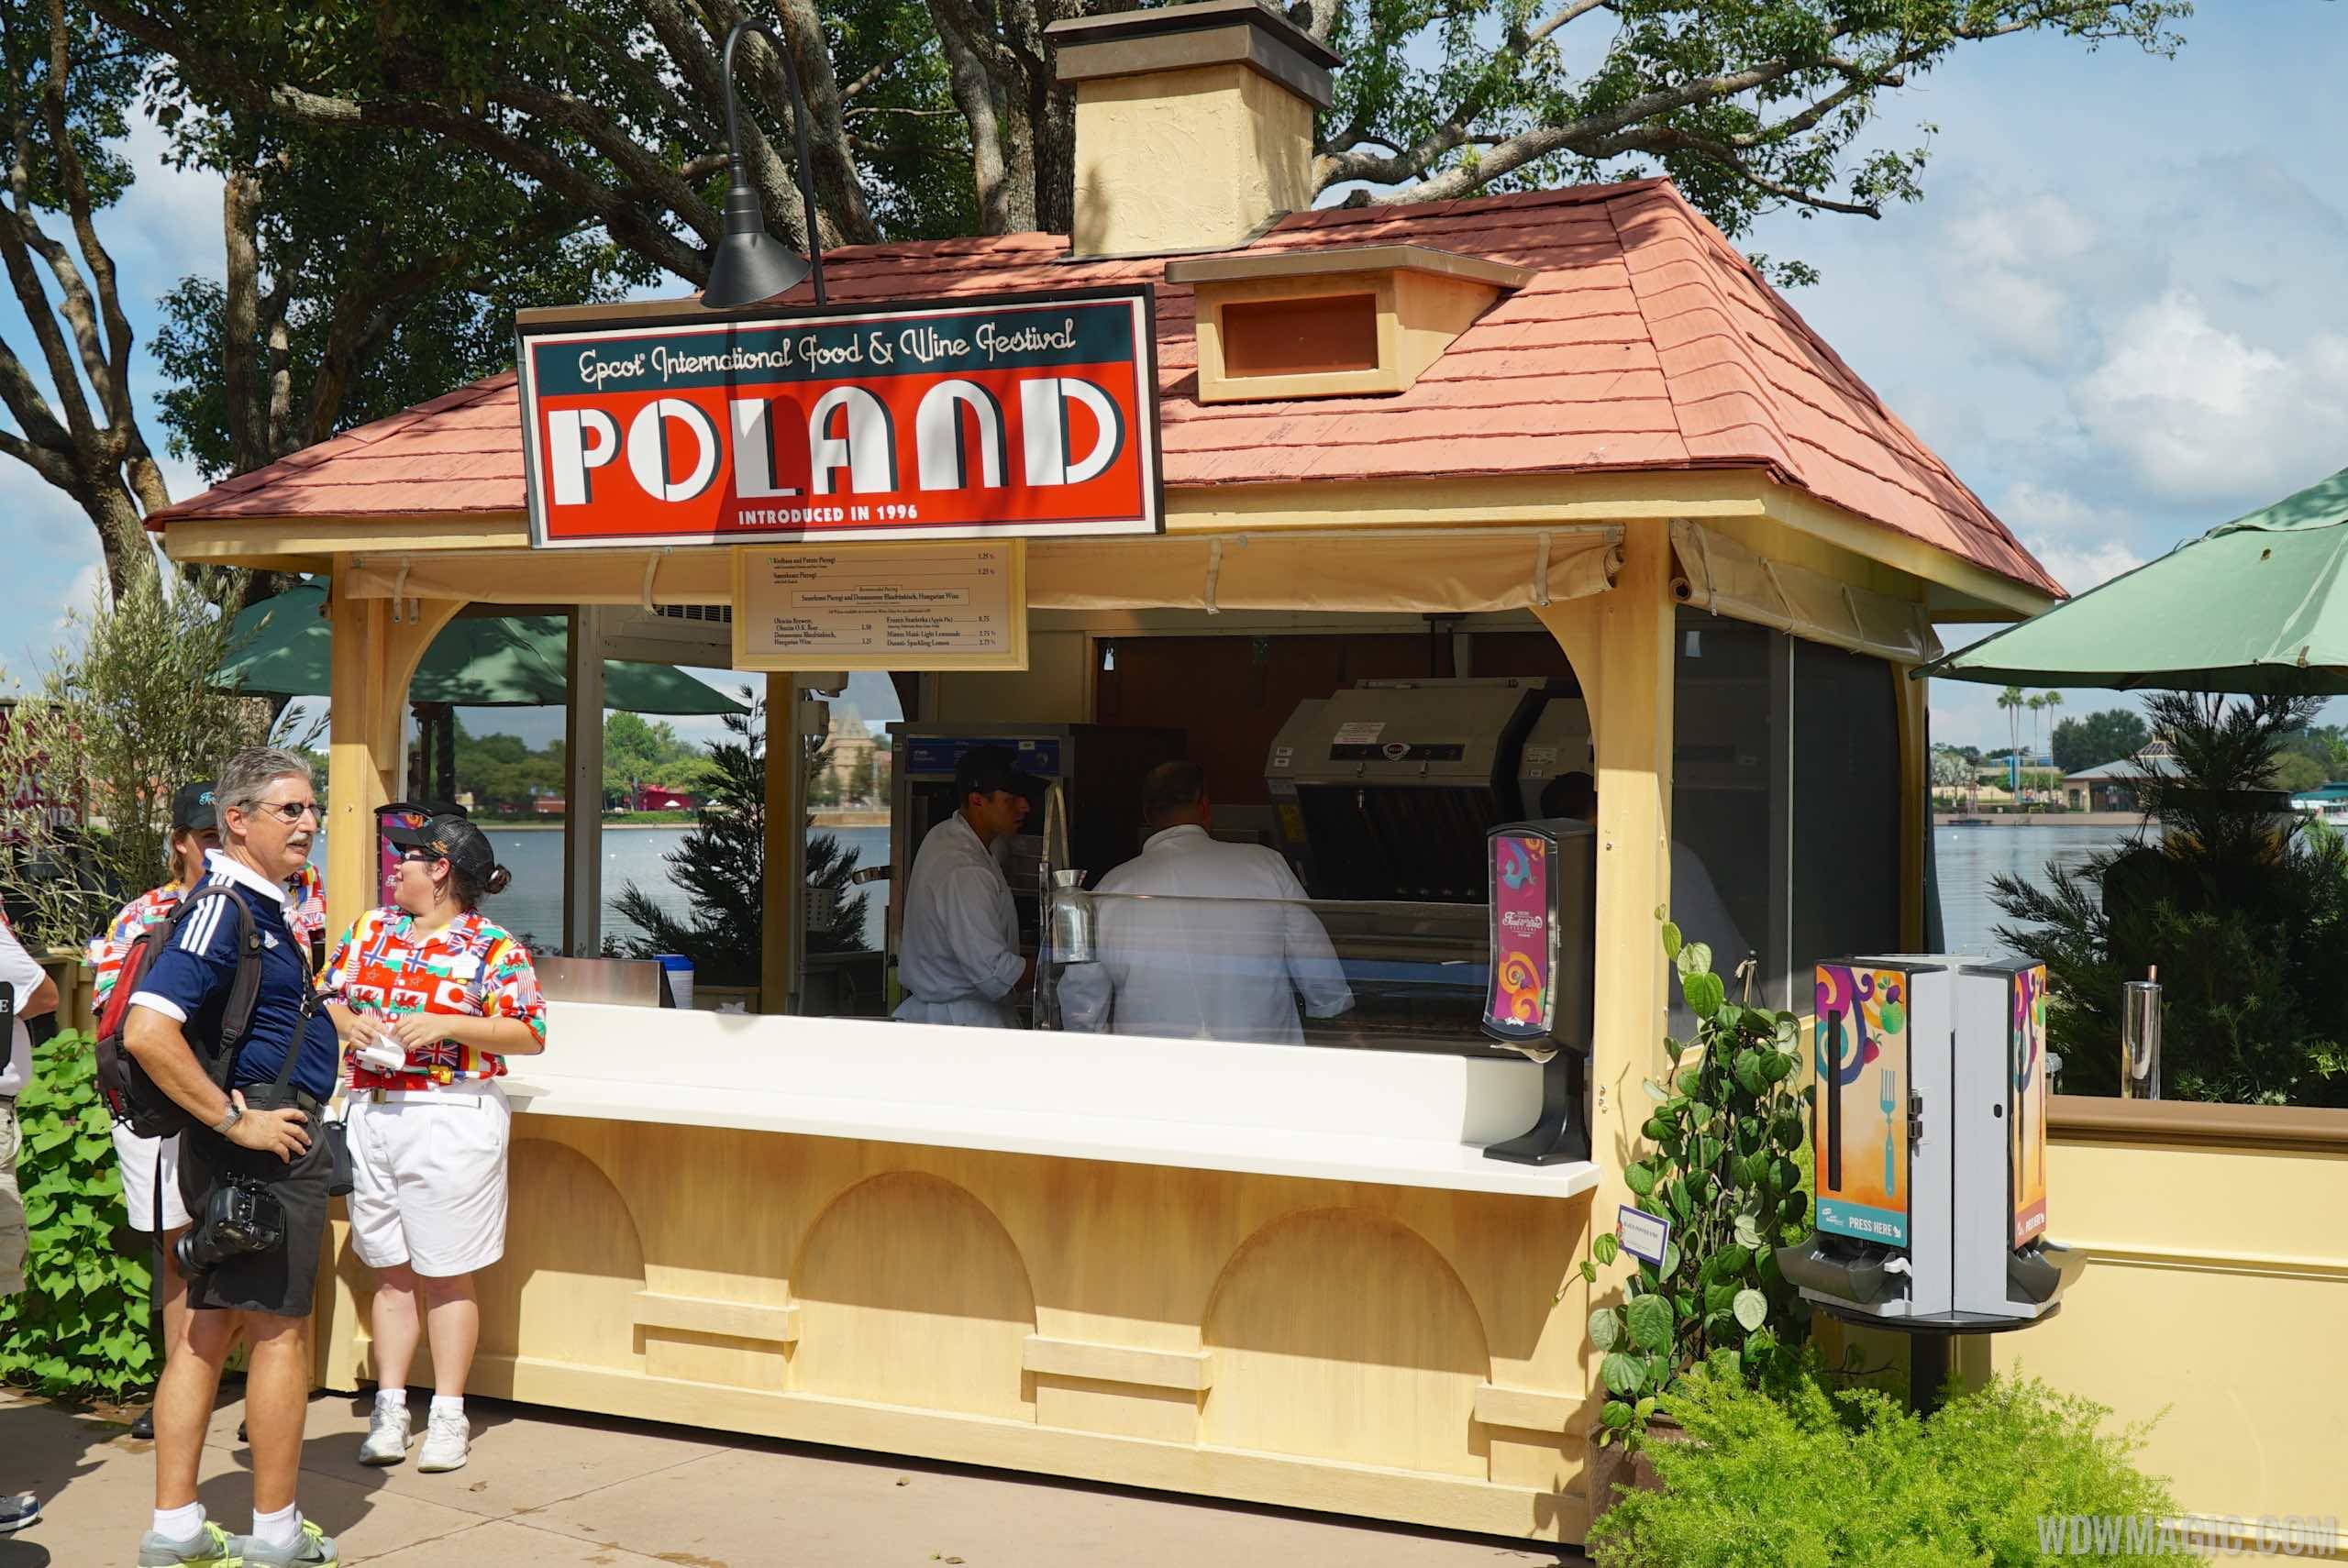 Poland Food and Wine Festival kiosk